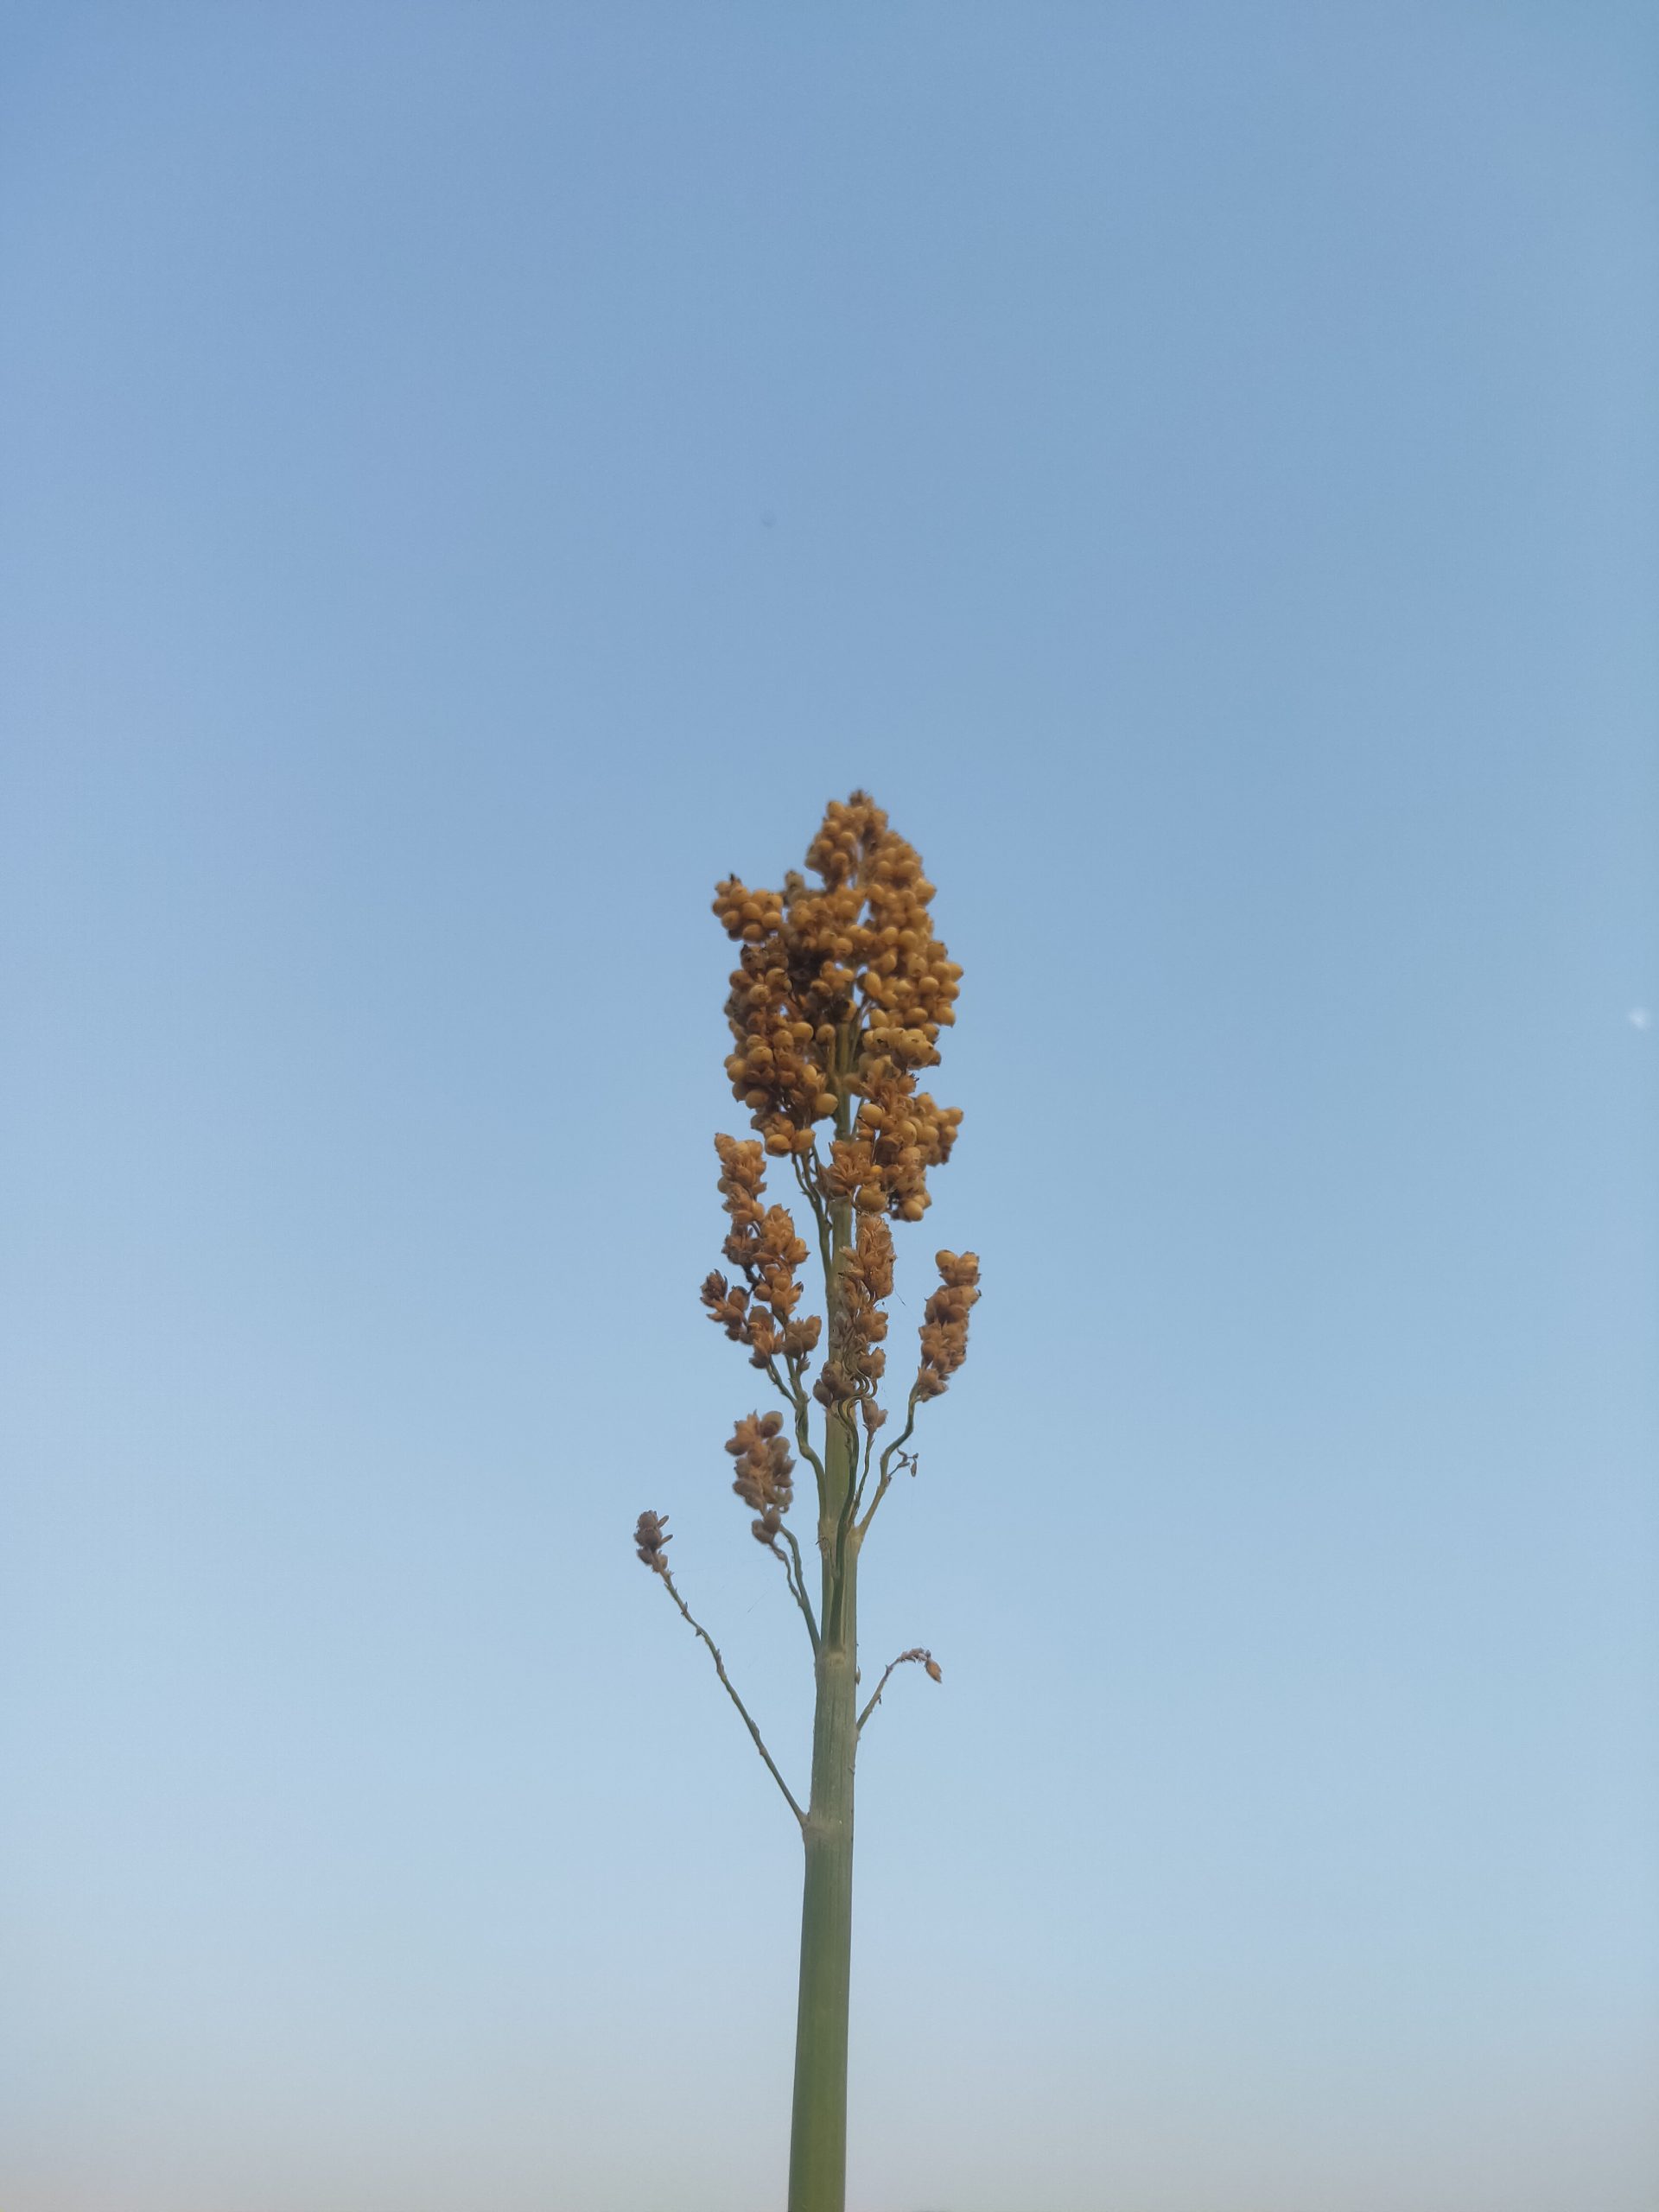 A sorghum plant